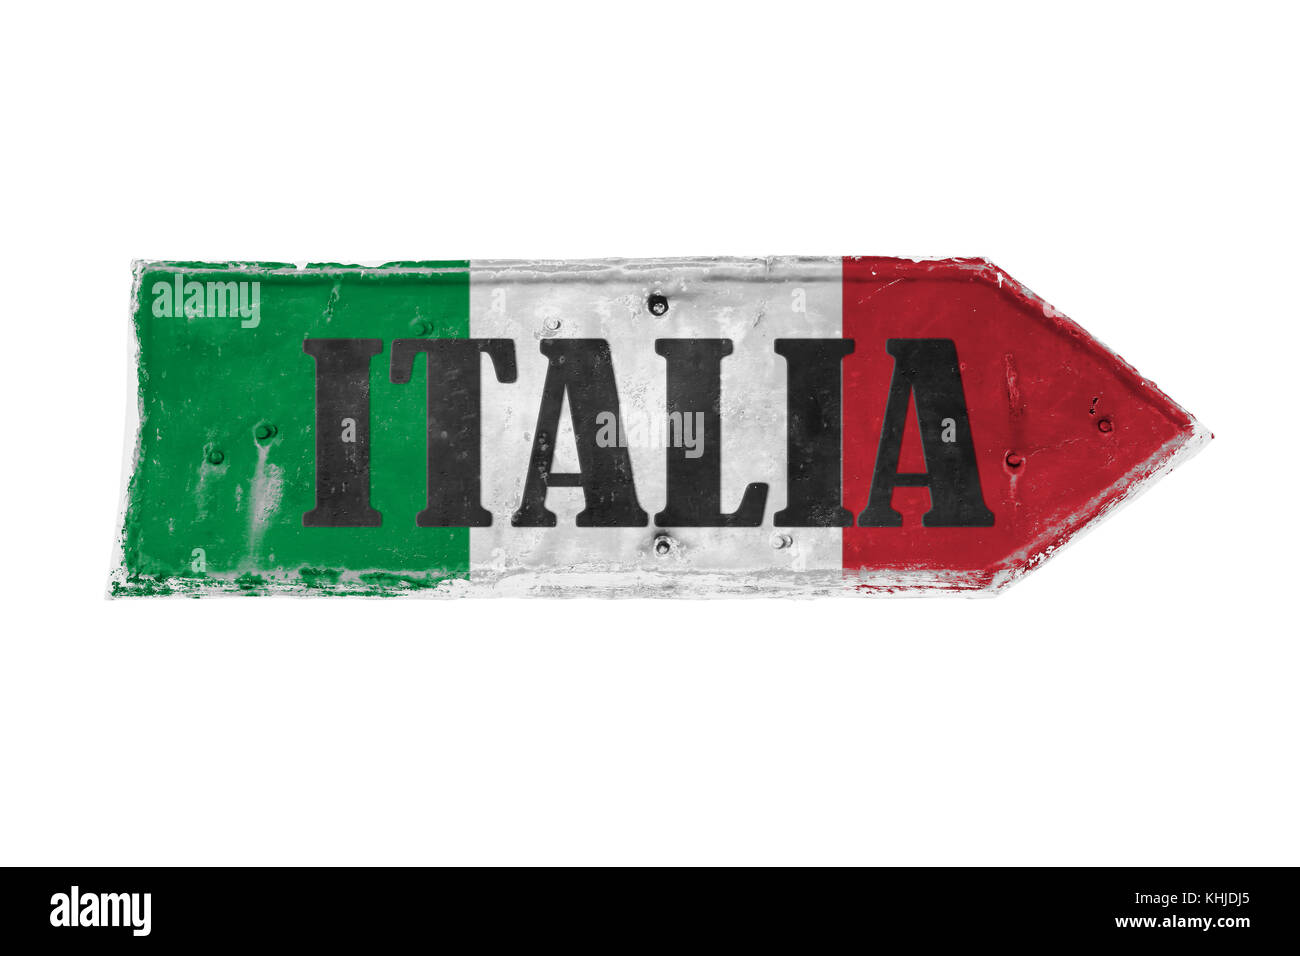 Italia (Italien in Italienisch) mit den Farben Grün, Weiß und Rot über Pfeil Form aus einer rostigen und grunge metal Eisenplatte mit Peeling beschichtet und Stockfoto